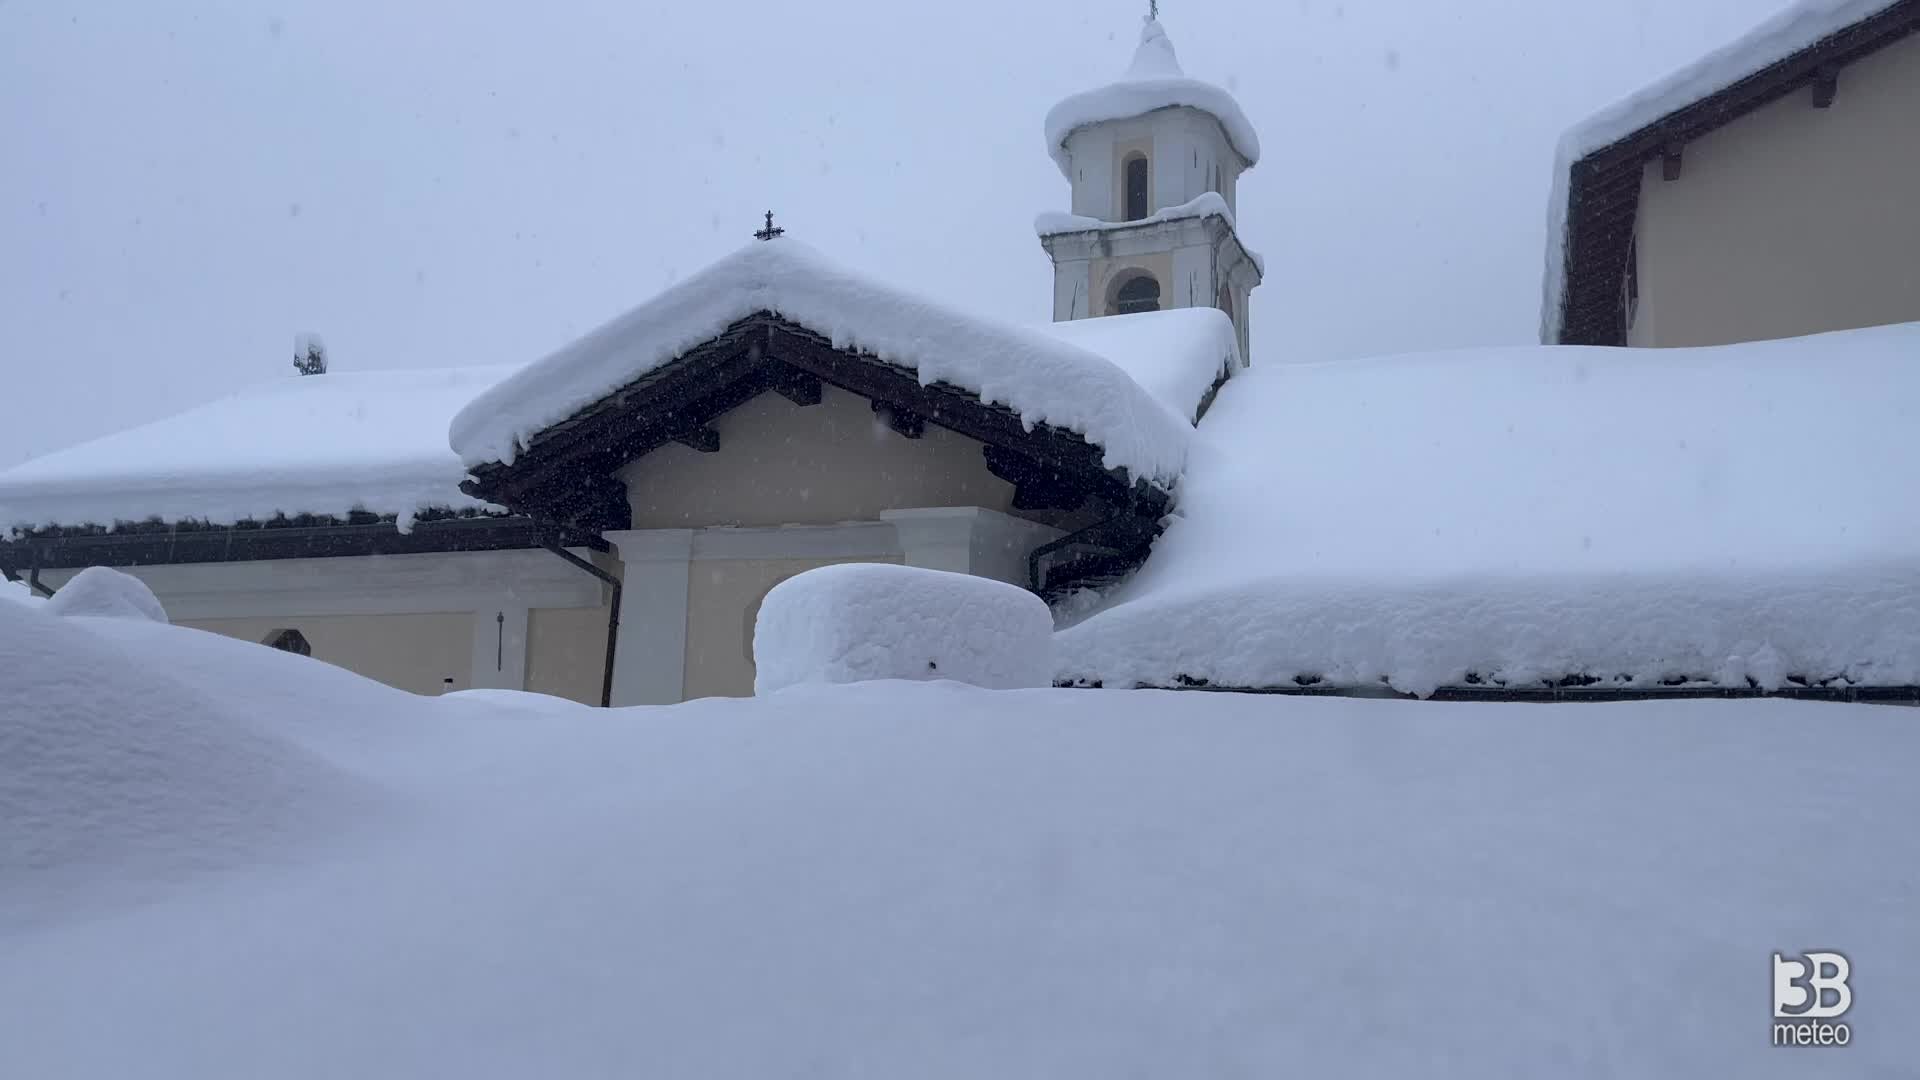 Cronaca meteo diretta - Lombardia. Neve in Valle Spluga, il drone in volo nella zona di Madesimo - Video